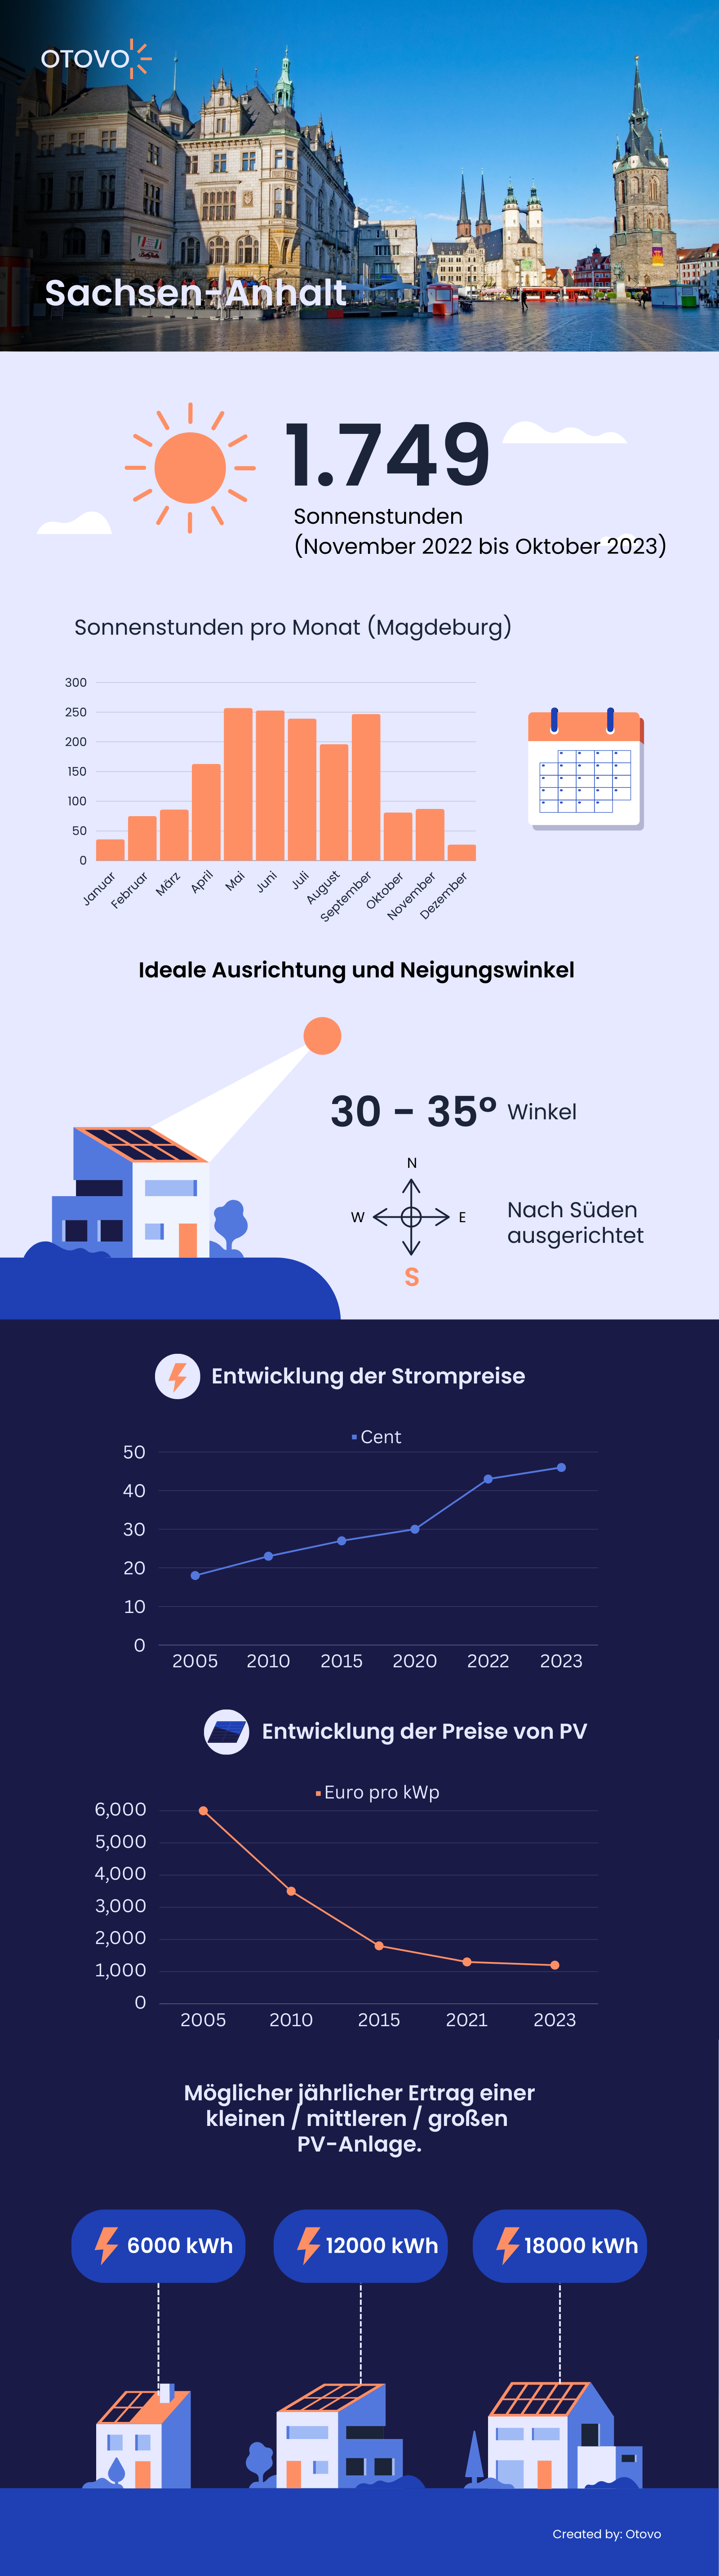 Infografik zu Solaranlagen in Sachsen-Anhalt